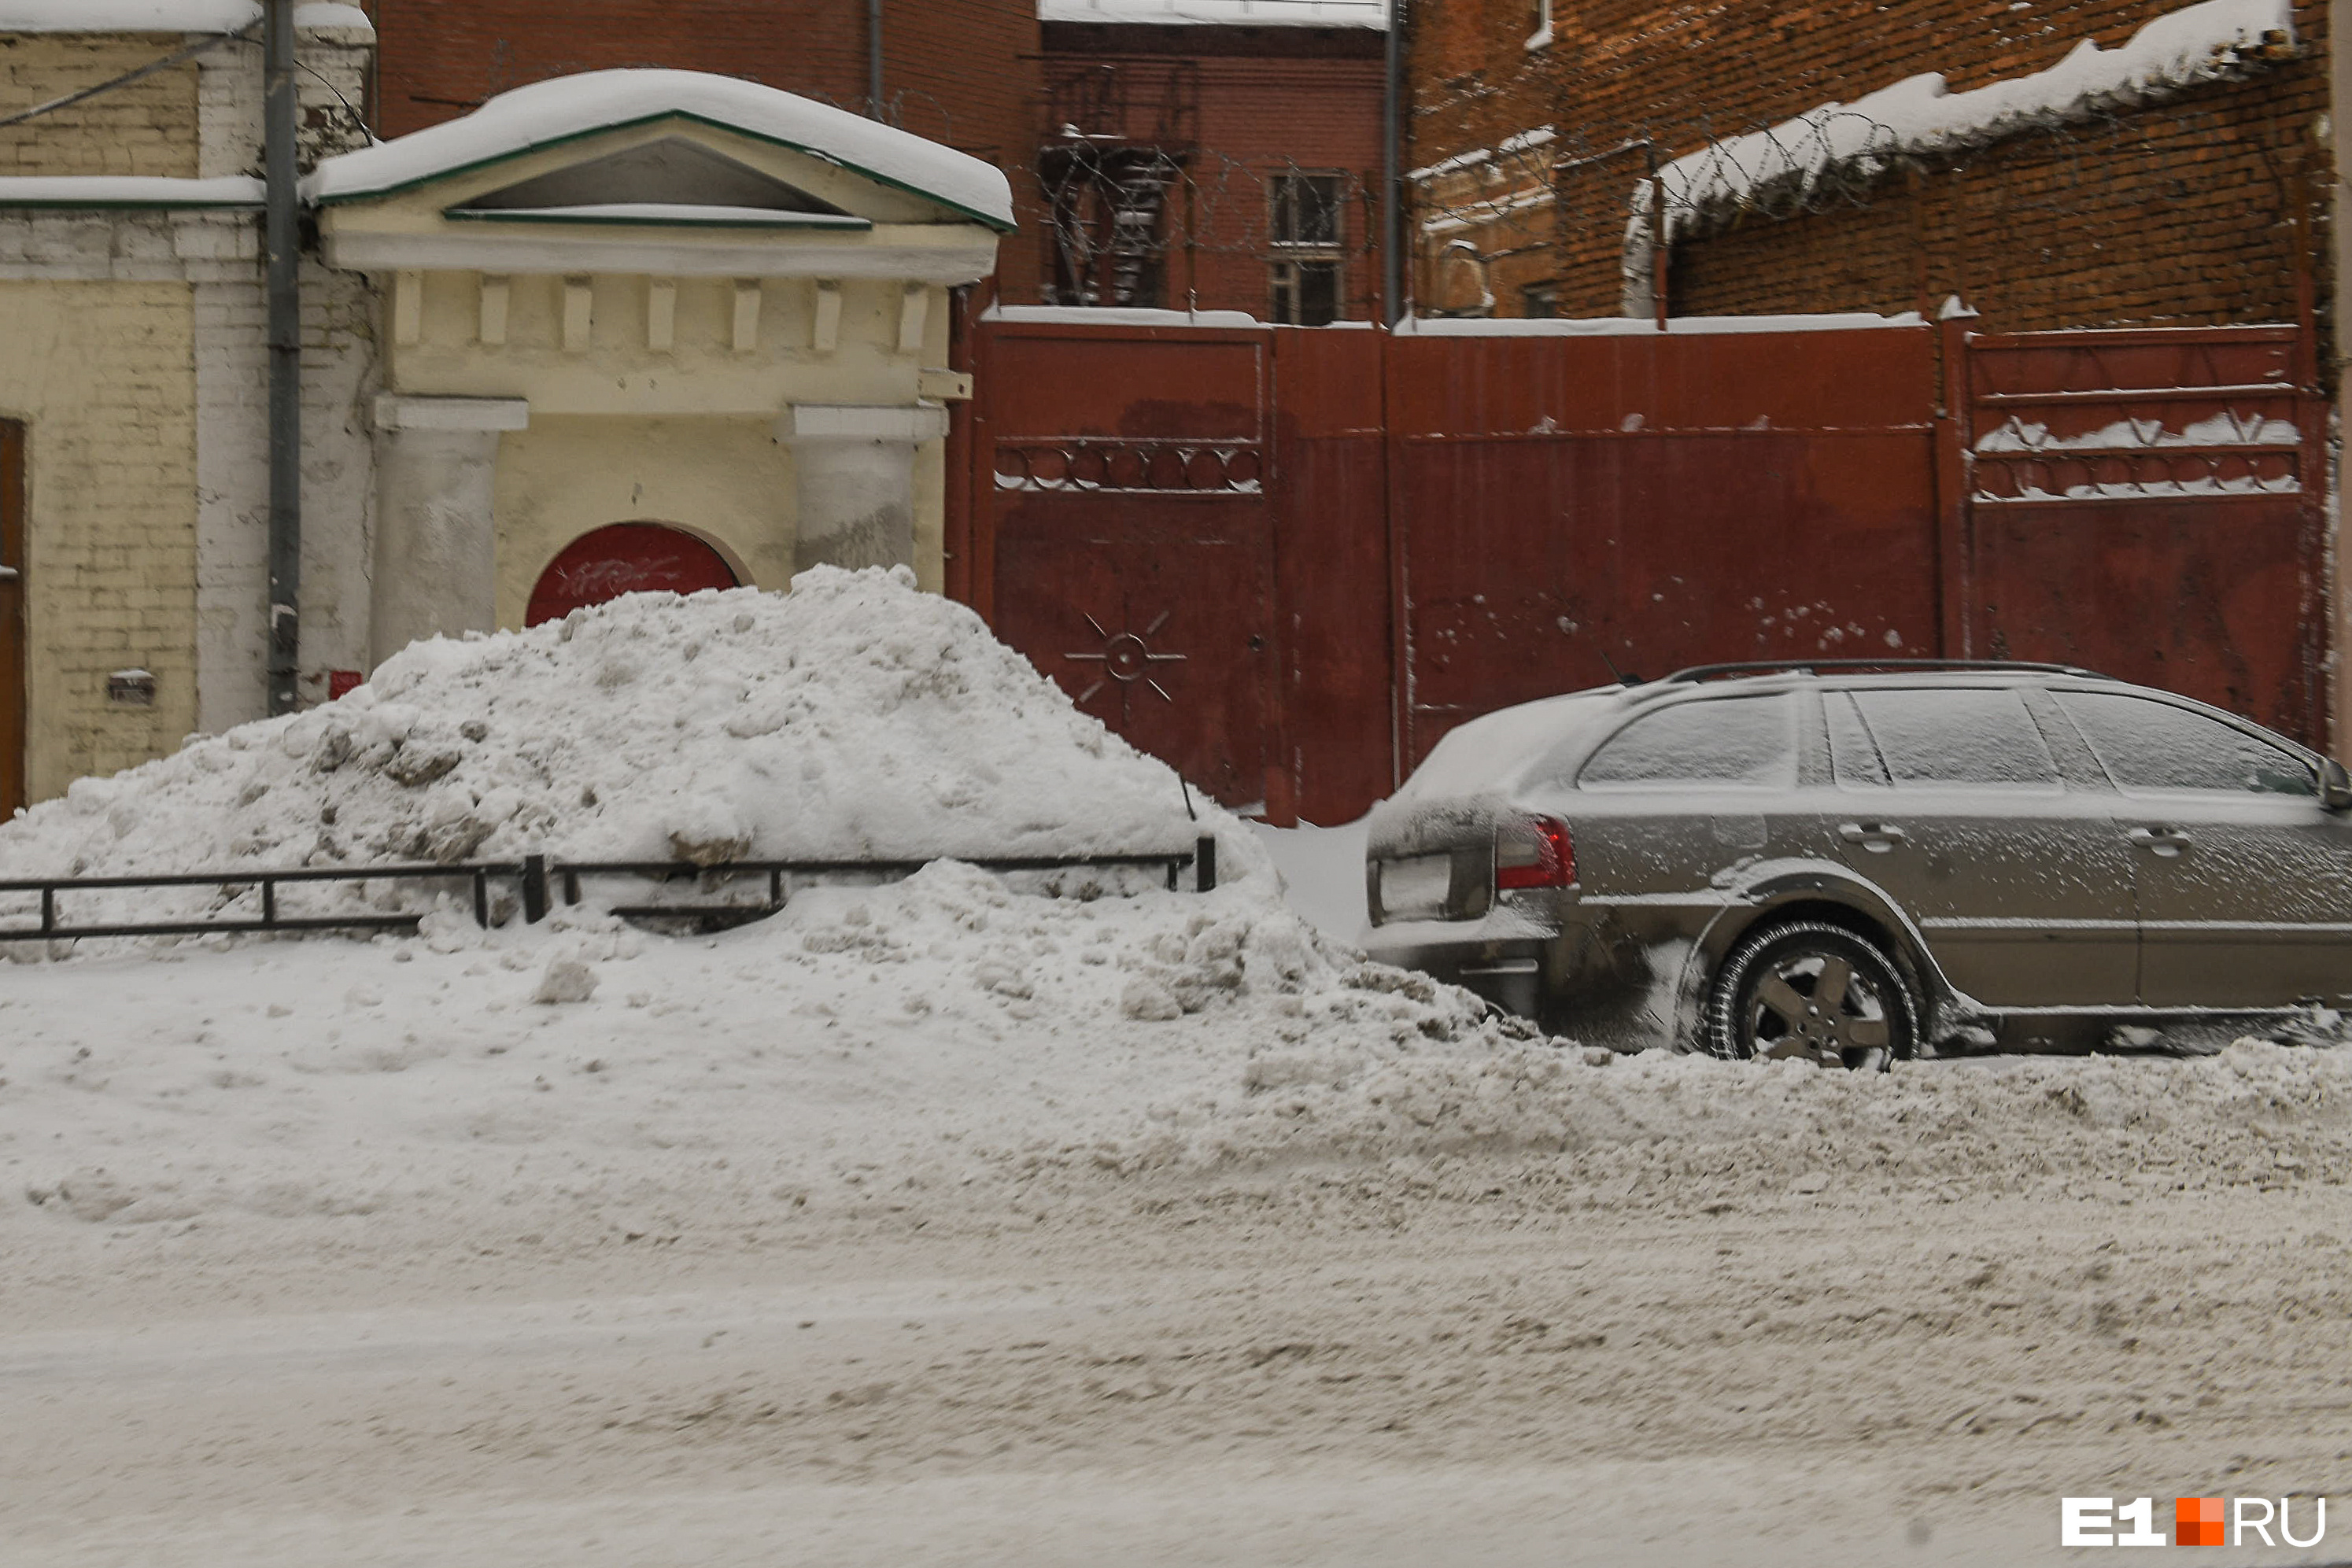 Грязные кучи снега явно не красят городские улицы. Но лучше снег на обочинах, чем на дорогах